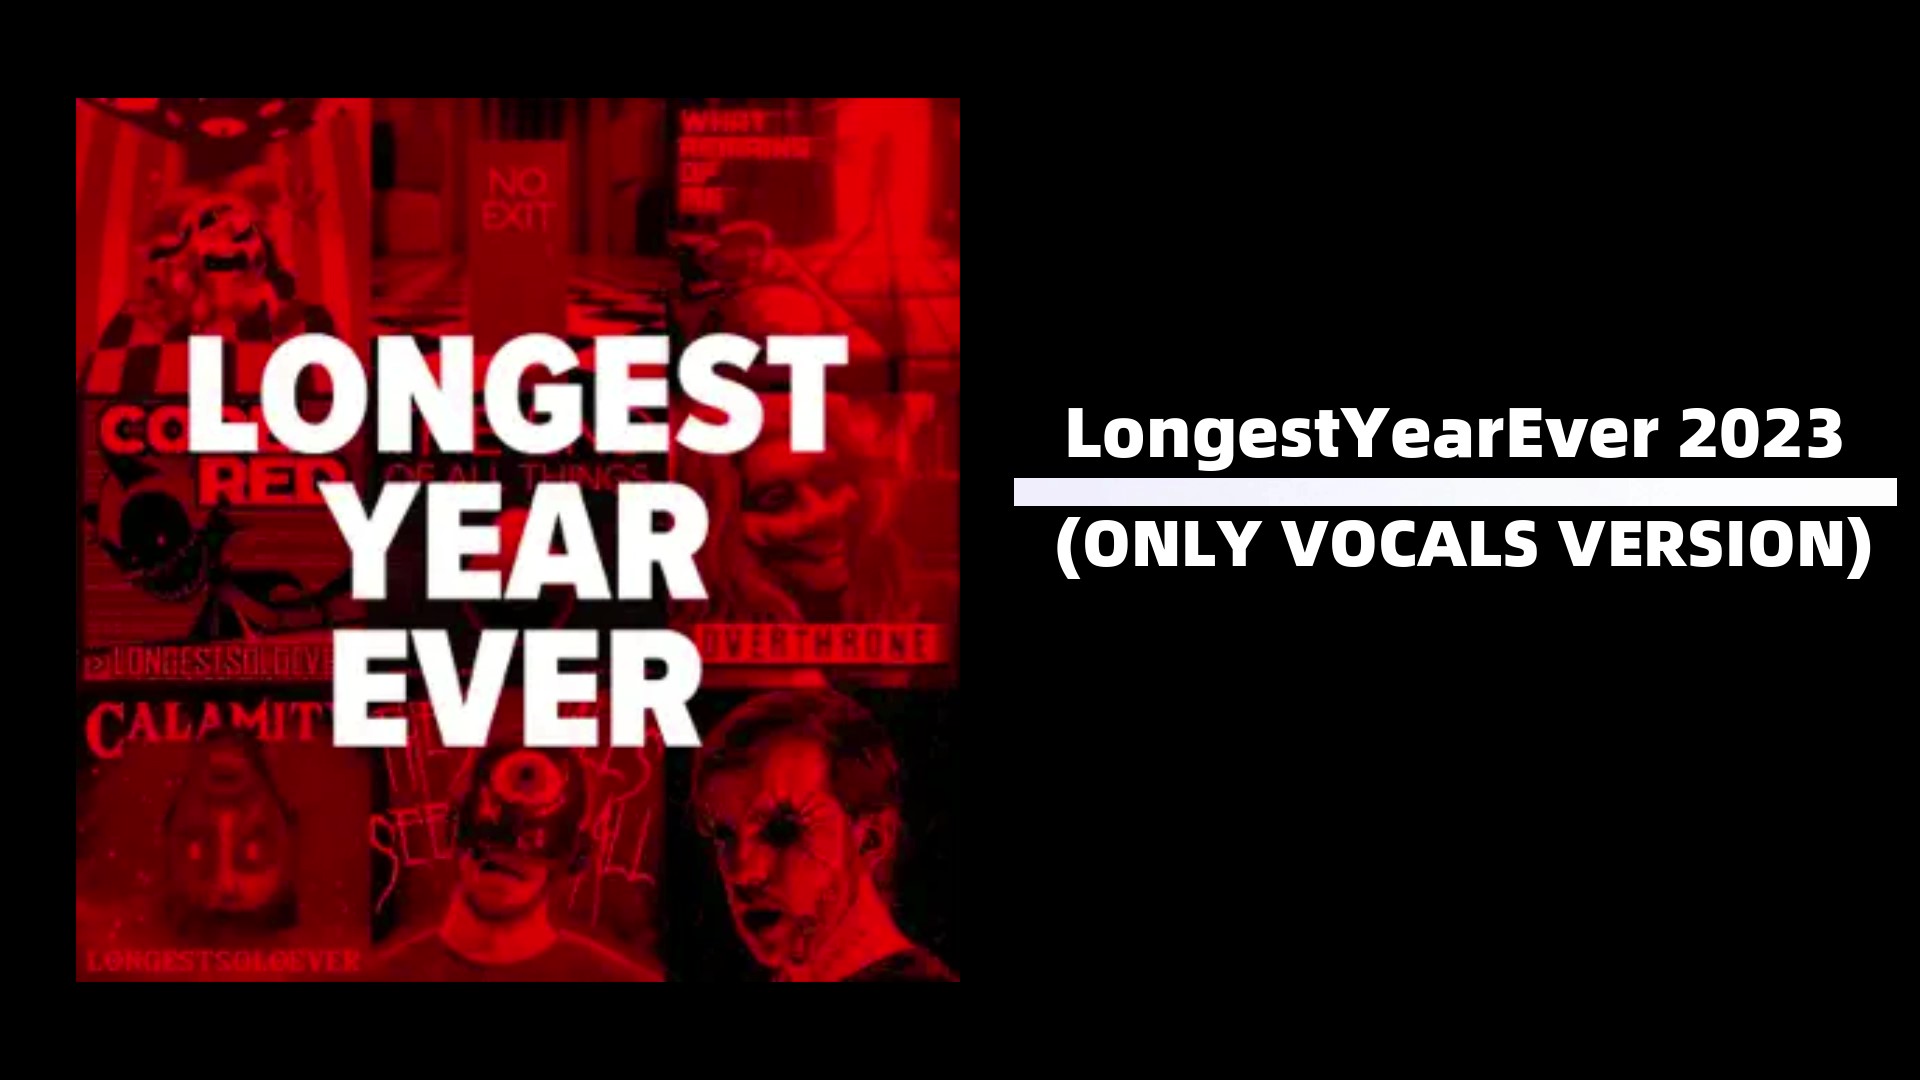 Longestsoloever - LongestYearEver 2023 (ВЕРСИЯ ТОЛЬКО ДЛЯ ВОКАЛА)